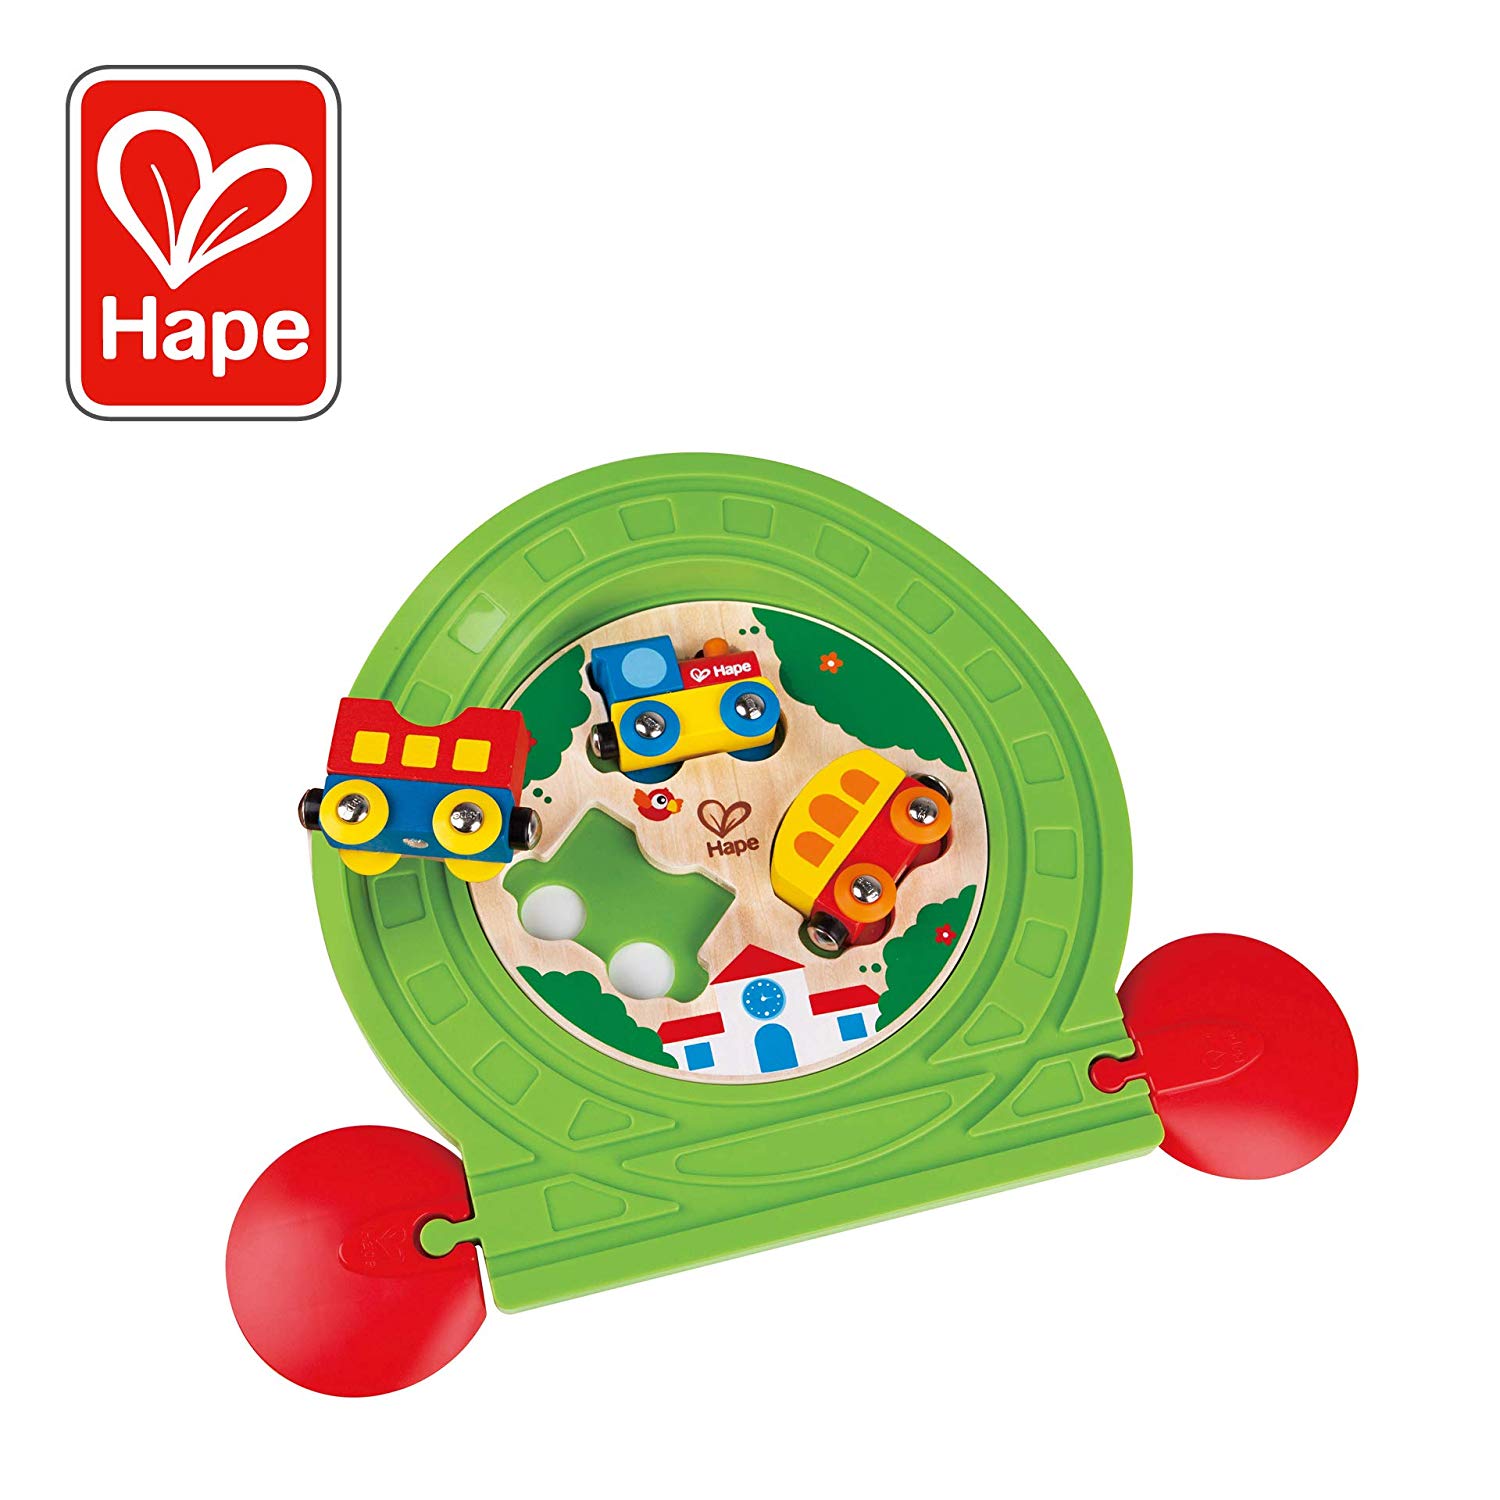 Hape E3819 Baby Toy Making Tracks Jigsaw Puzzle "